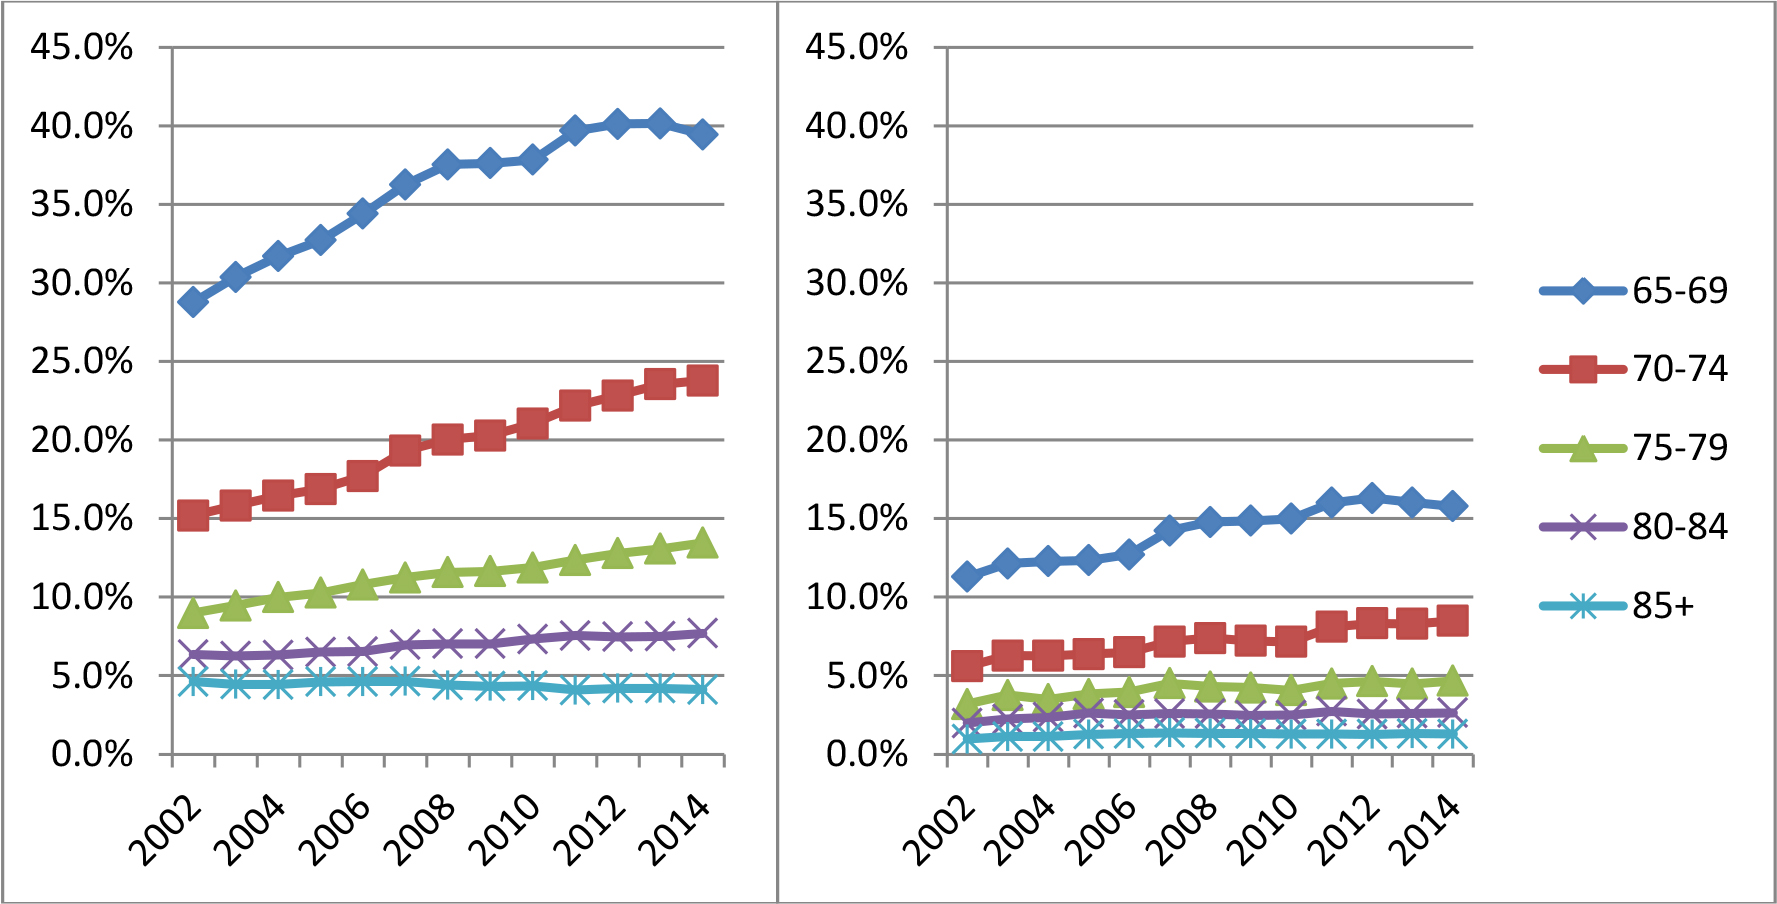 Deux graphiques linéaires comparant les taux d’emploi des bénéficiaires de la pension SV sans SRG et des bénéficiaires du SRG et de la pension SV entre 2002 et 2014. La version textuelle suit.